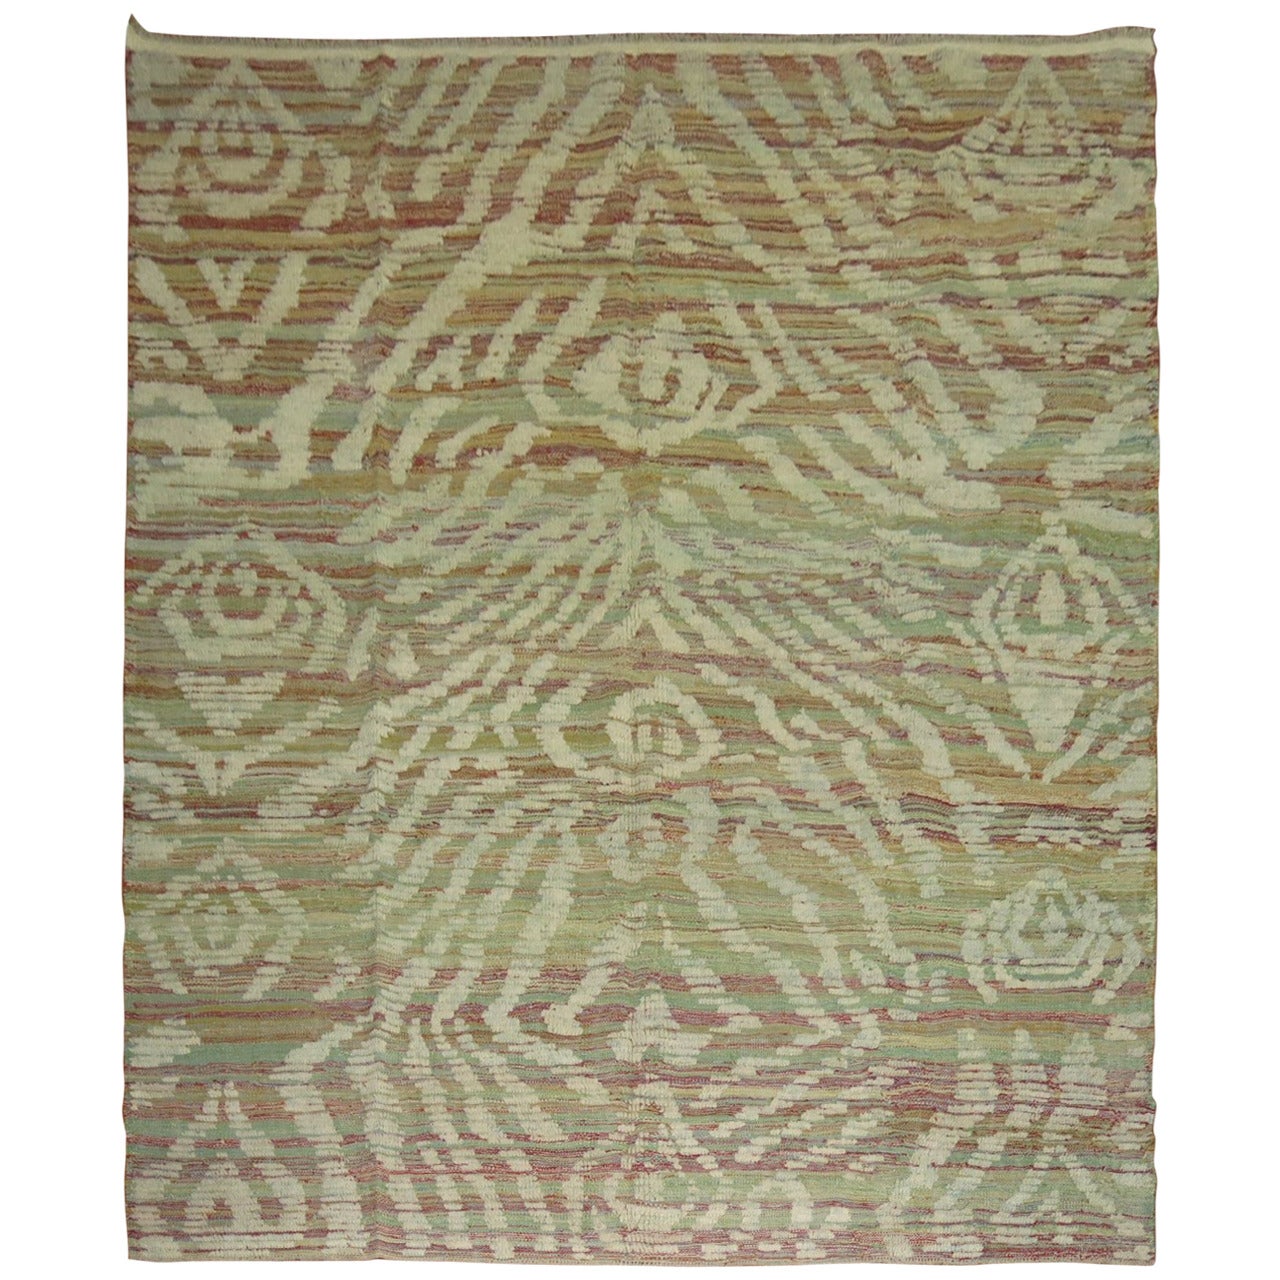 Turkish Inspired Flat-Weave Carpet